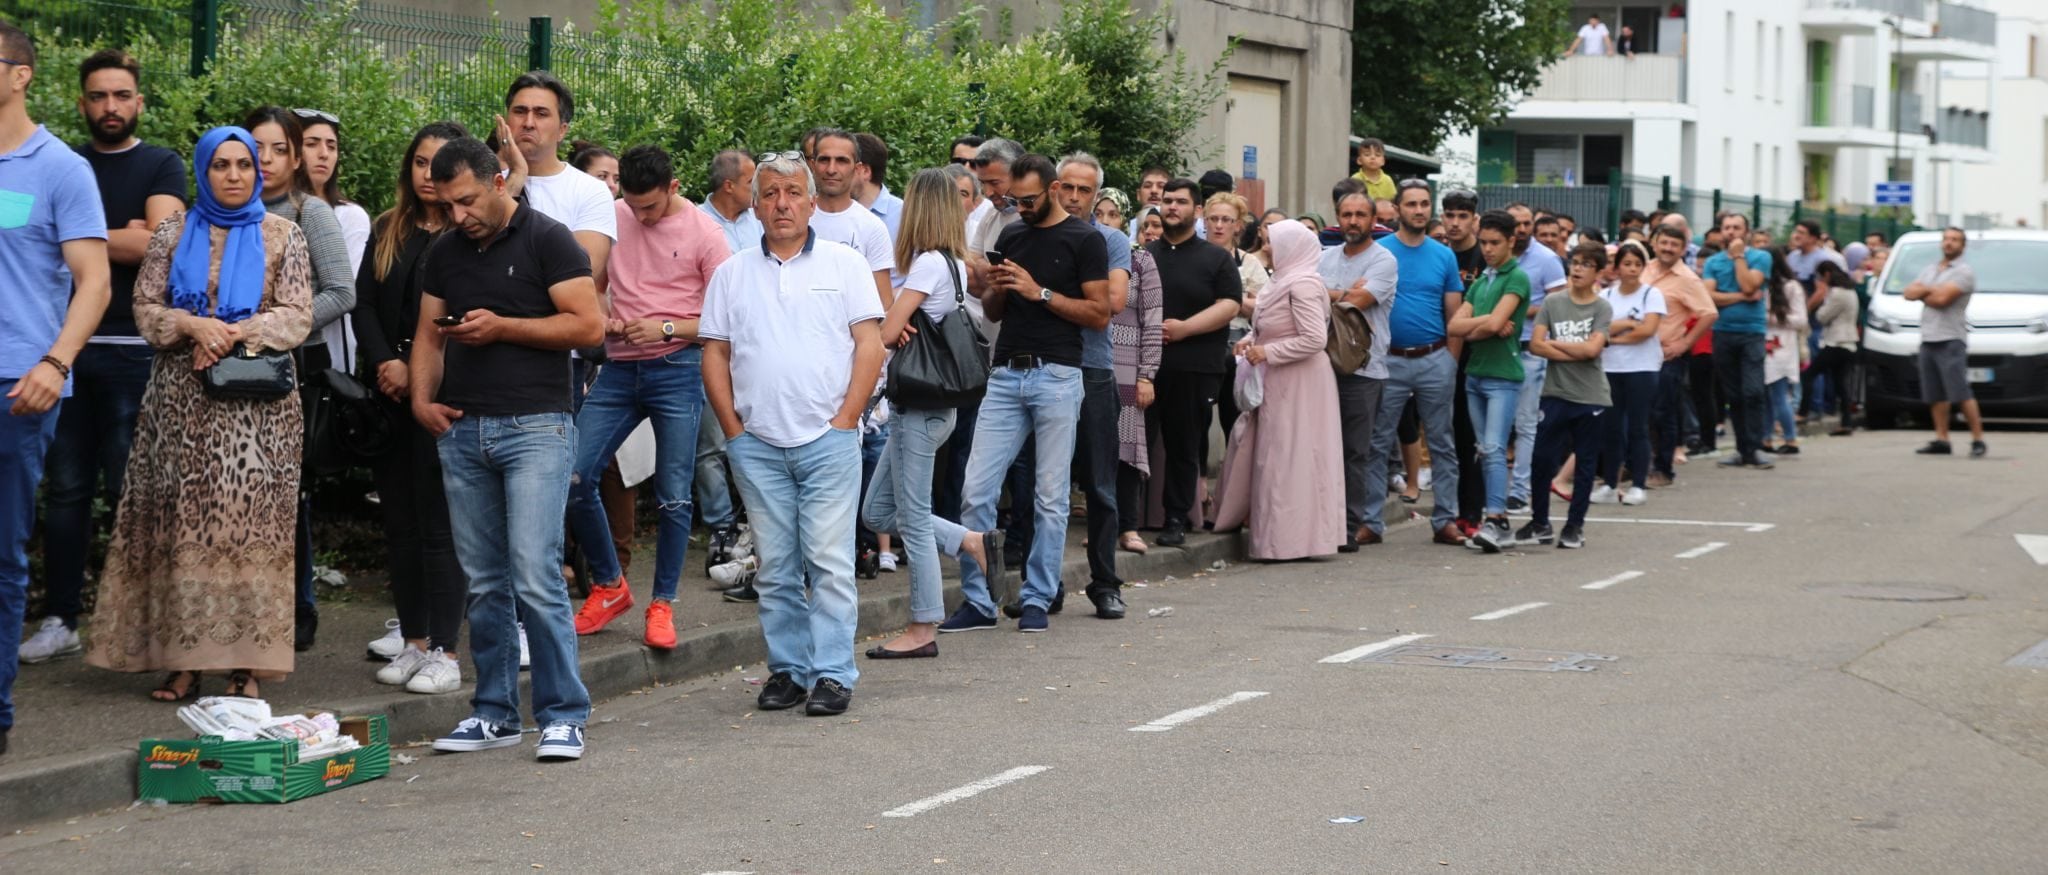 Entre l’urne et la mosquée, des élections turques à Strasbourg sous tension